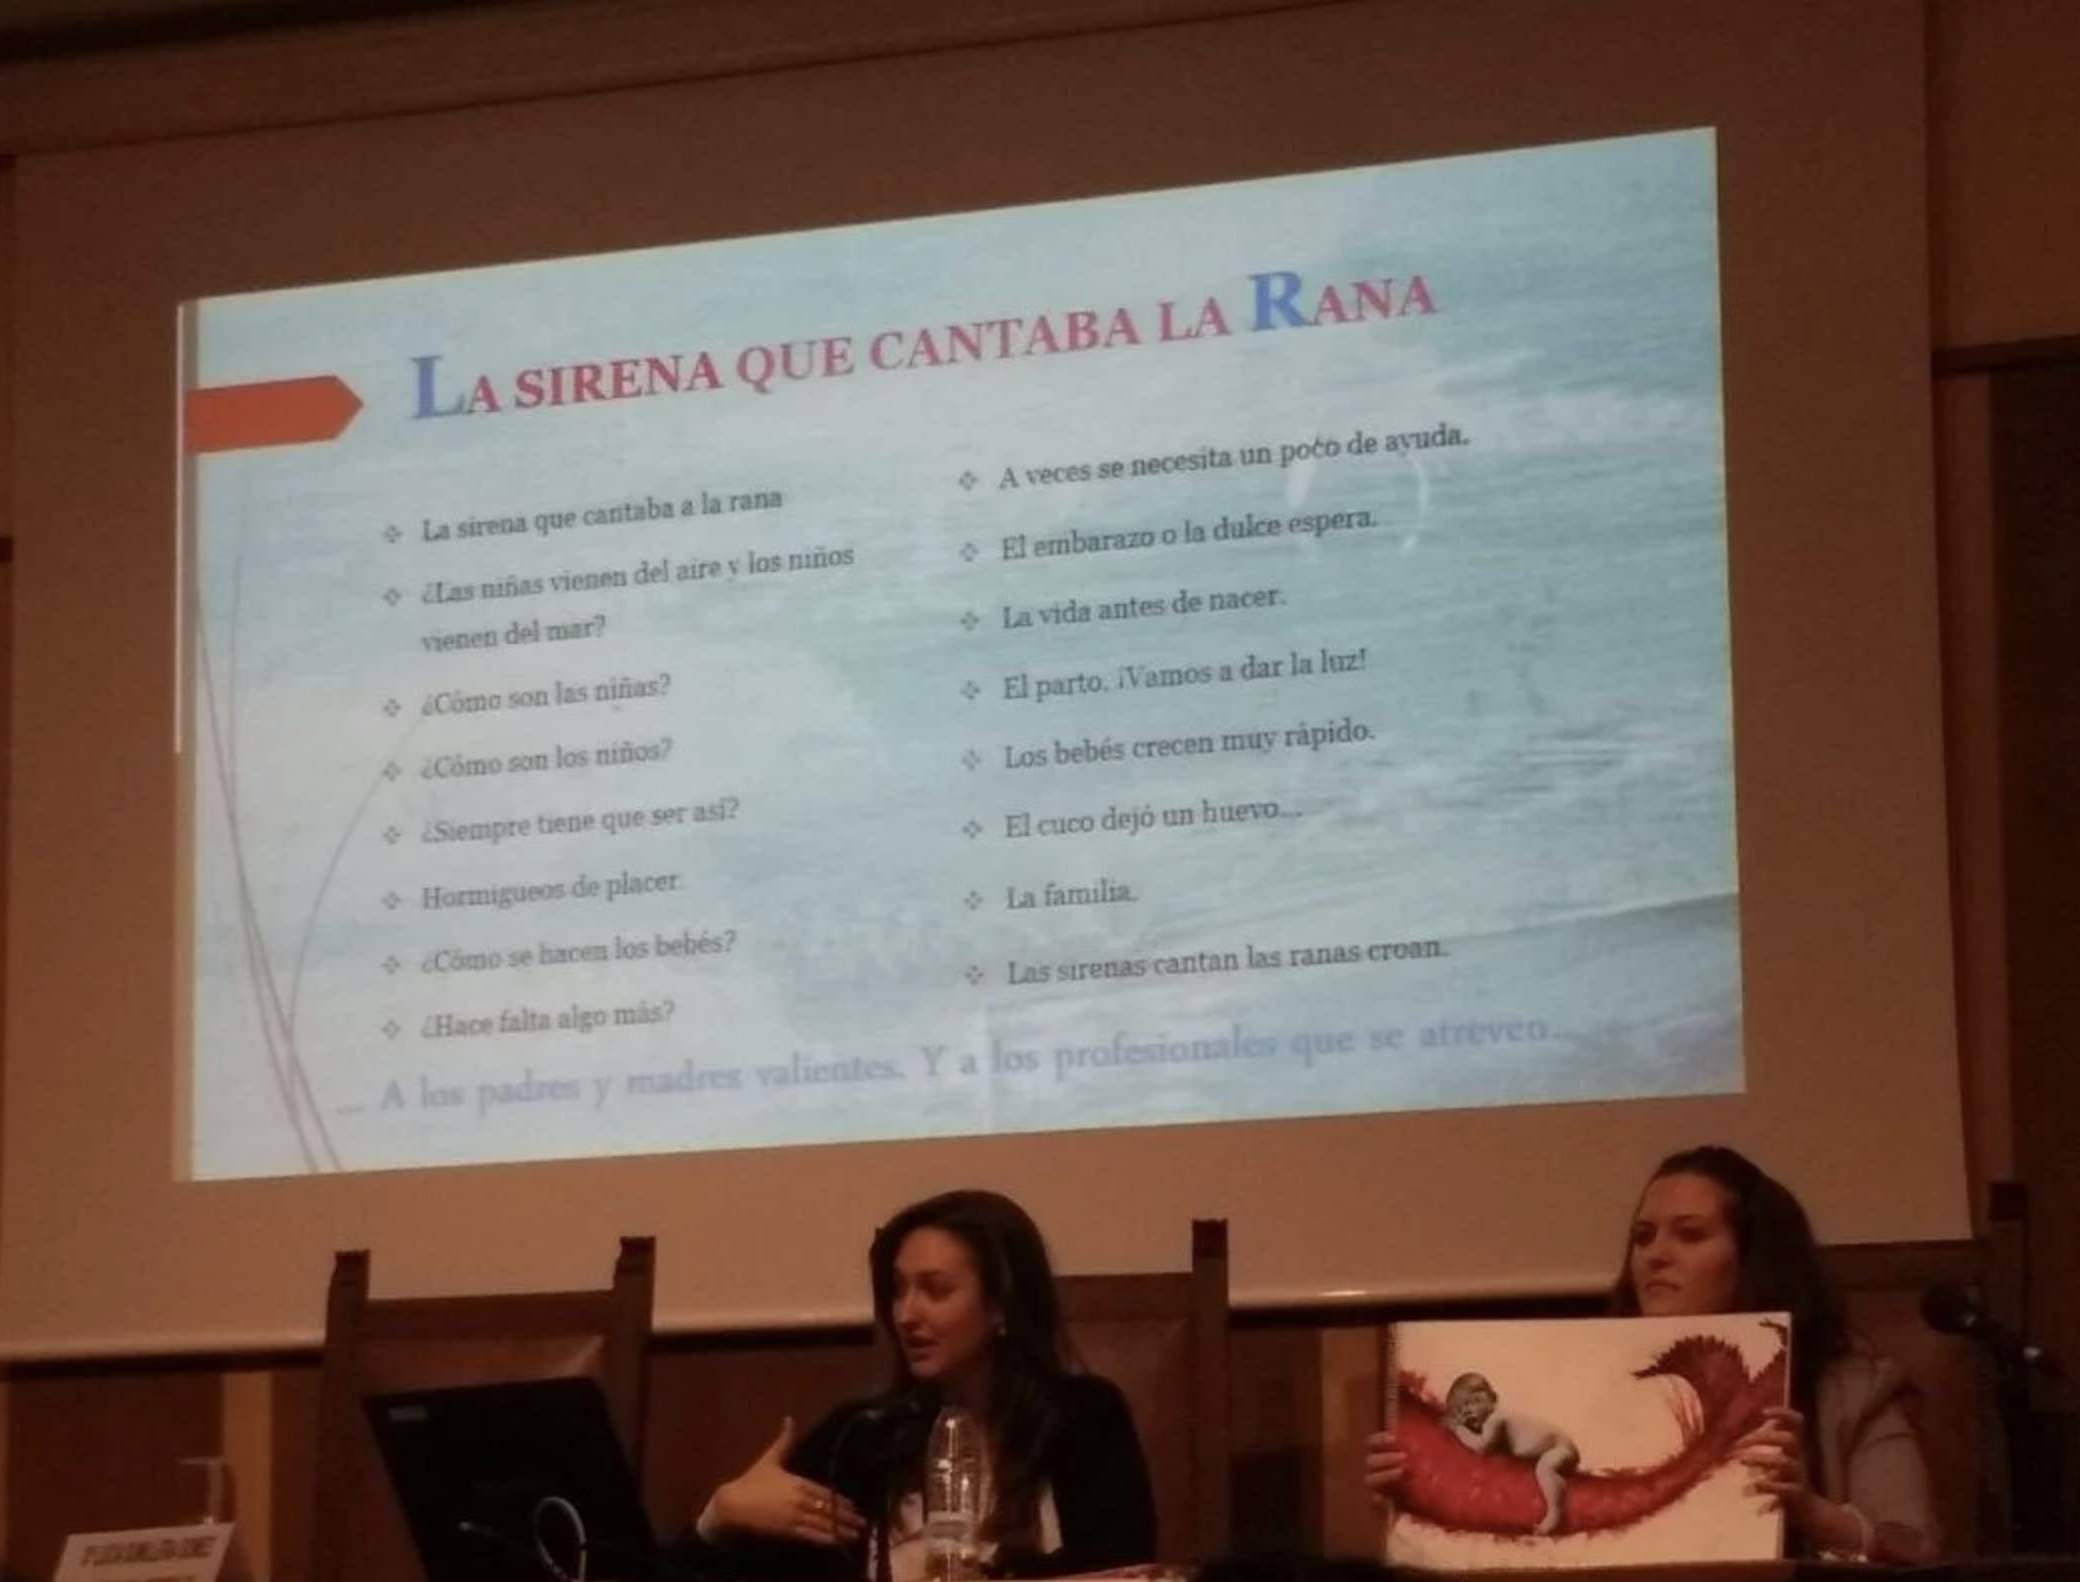 Presentación de “La sirena que cantaba a la rana” de Lucía Sumillera